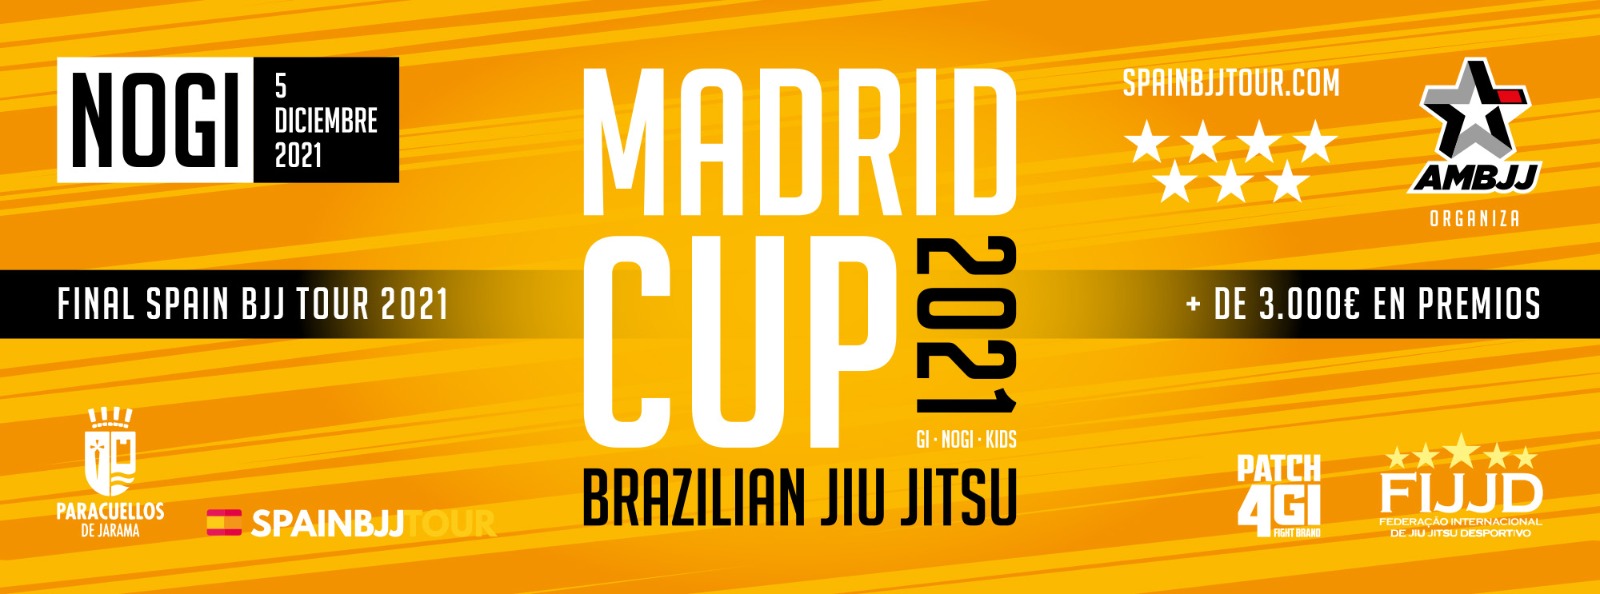 MADRID Cup BJJ NoGi 2021